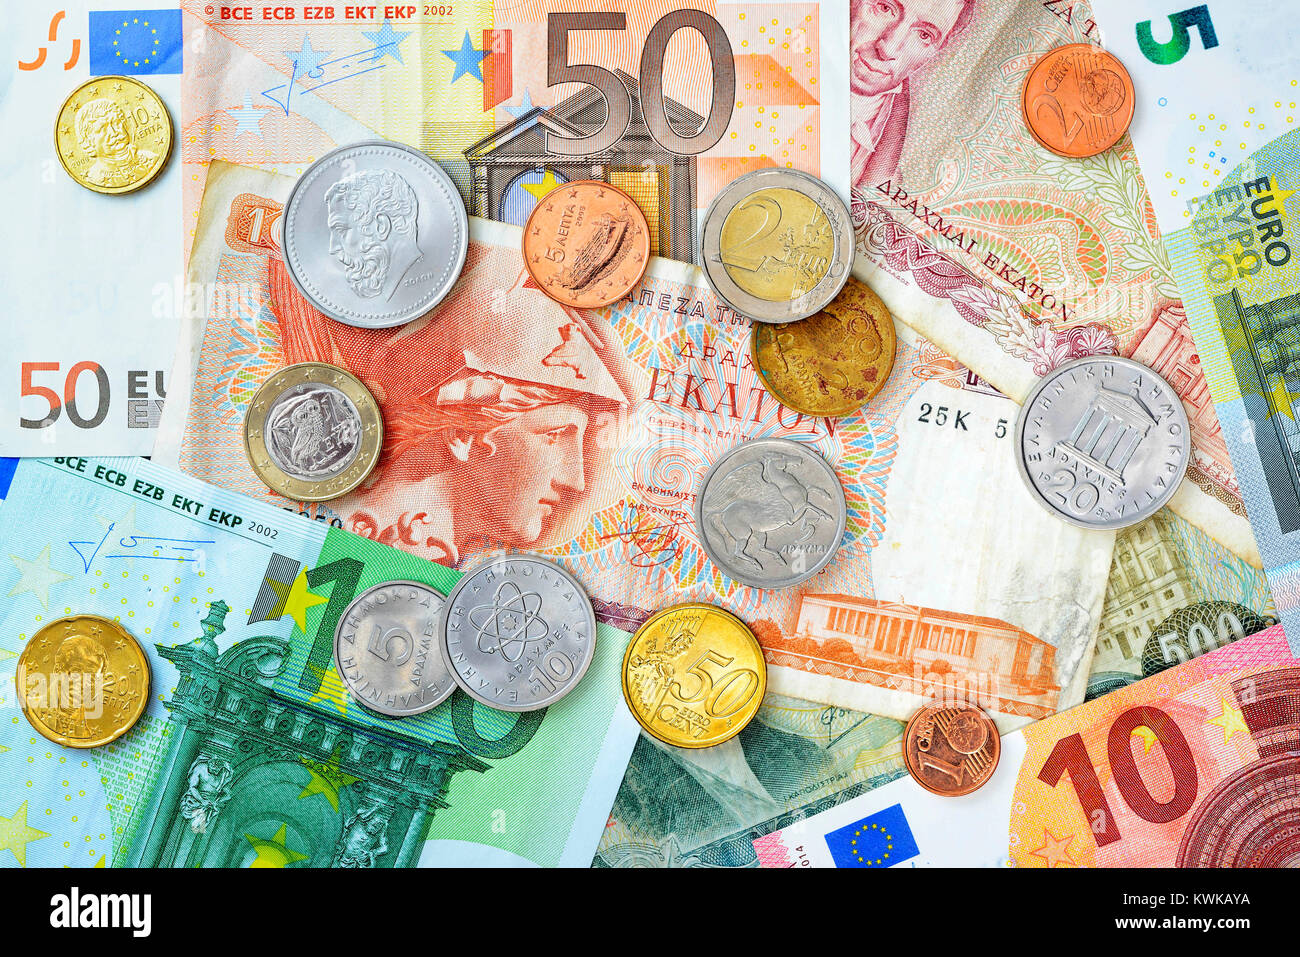 Greek drachms, euronotes and eurocoins, Griechische Drachmen, Euroscheine und Eurom?nzen Stock Photo